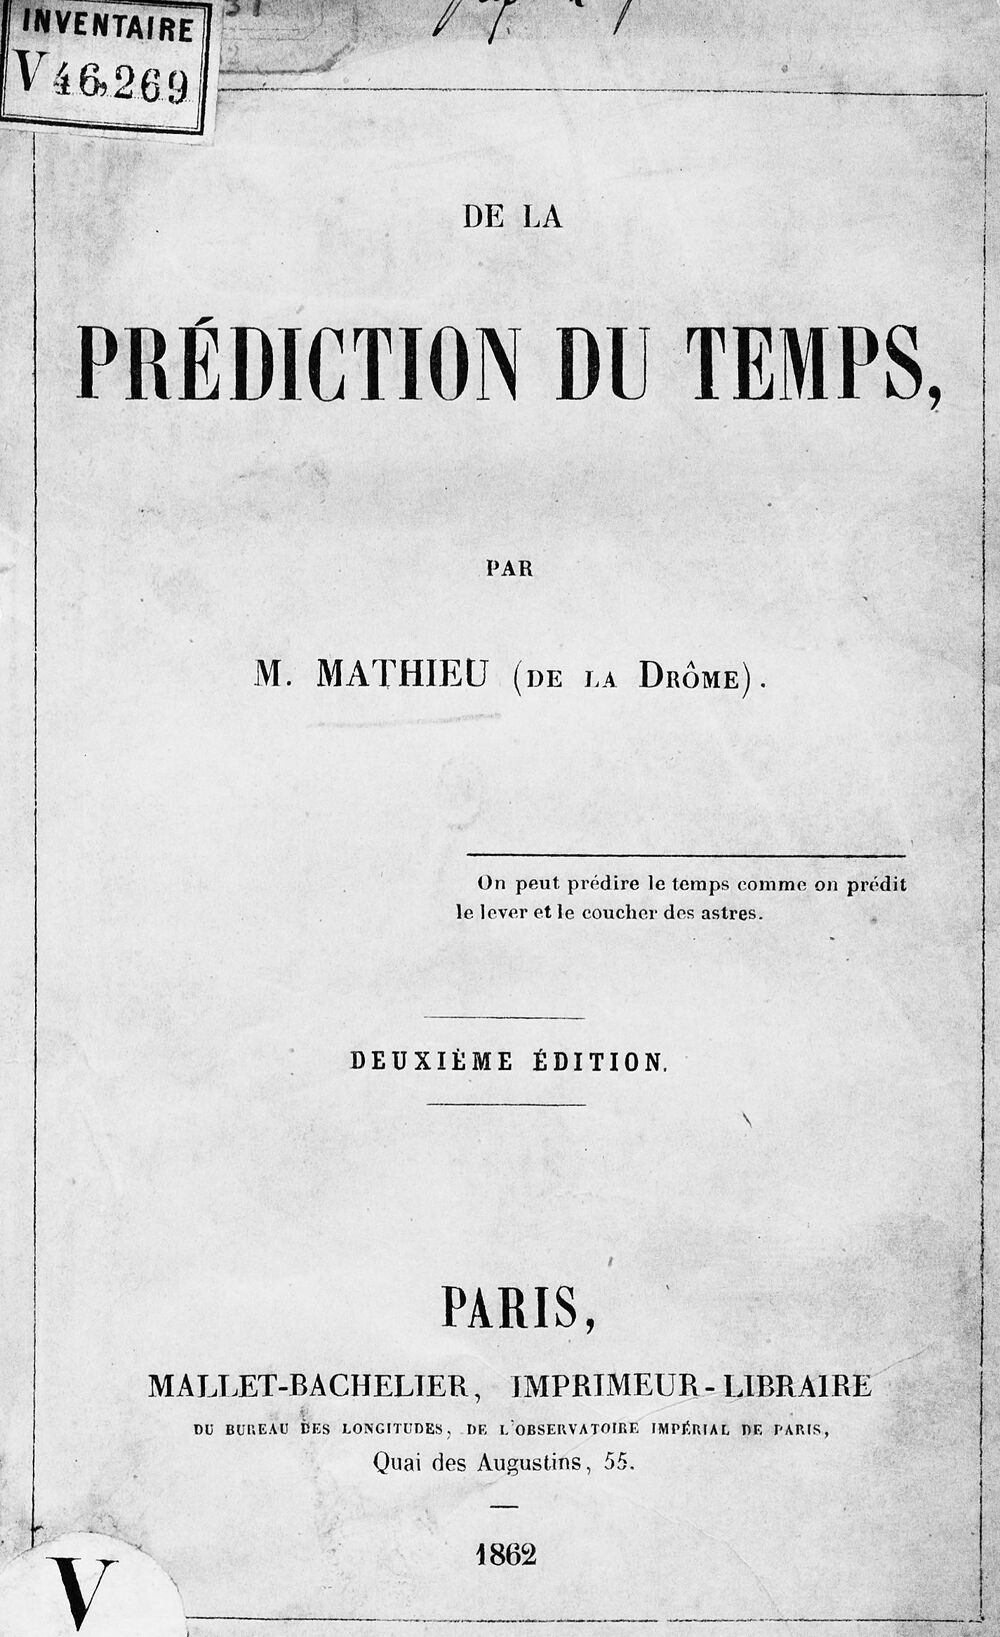 De la Prédiction du temps, par M. Mathieu (de la Drôme)